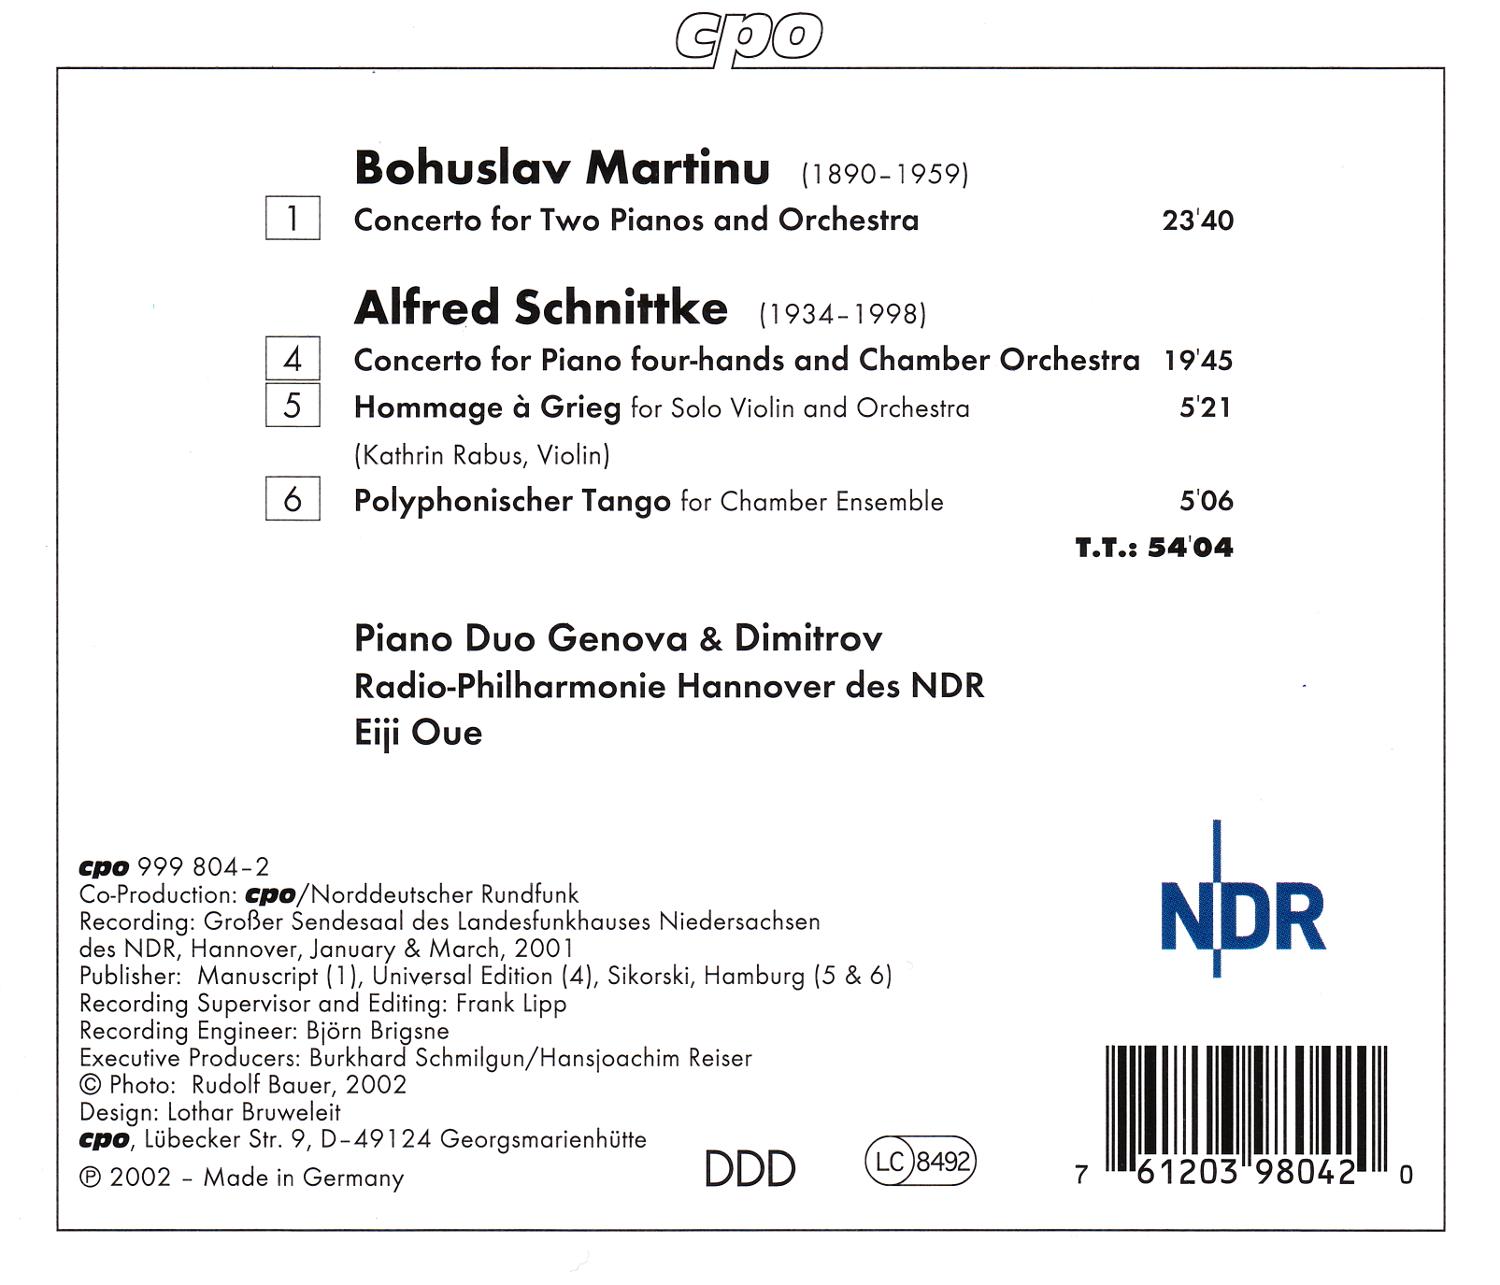 Bohuslav Martinu & Alfred Schnittke • Konzerte für zwei Klaviere (cpo 999 804-2) |Back Inlay